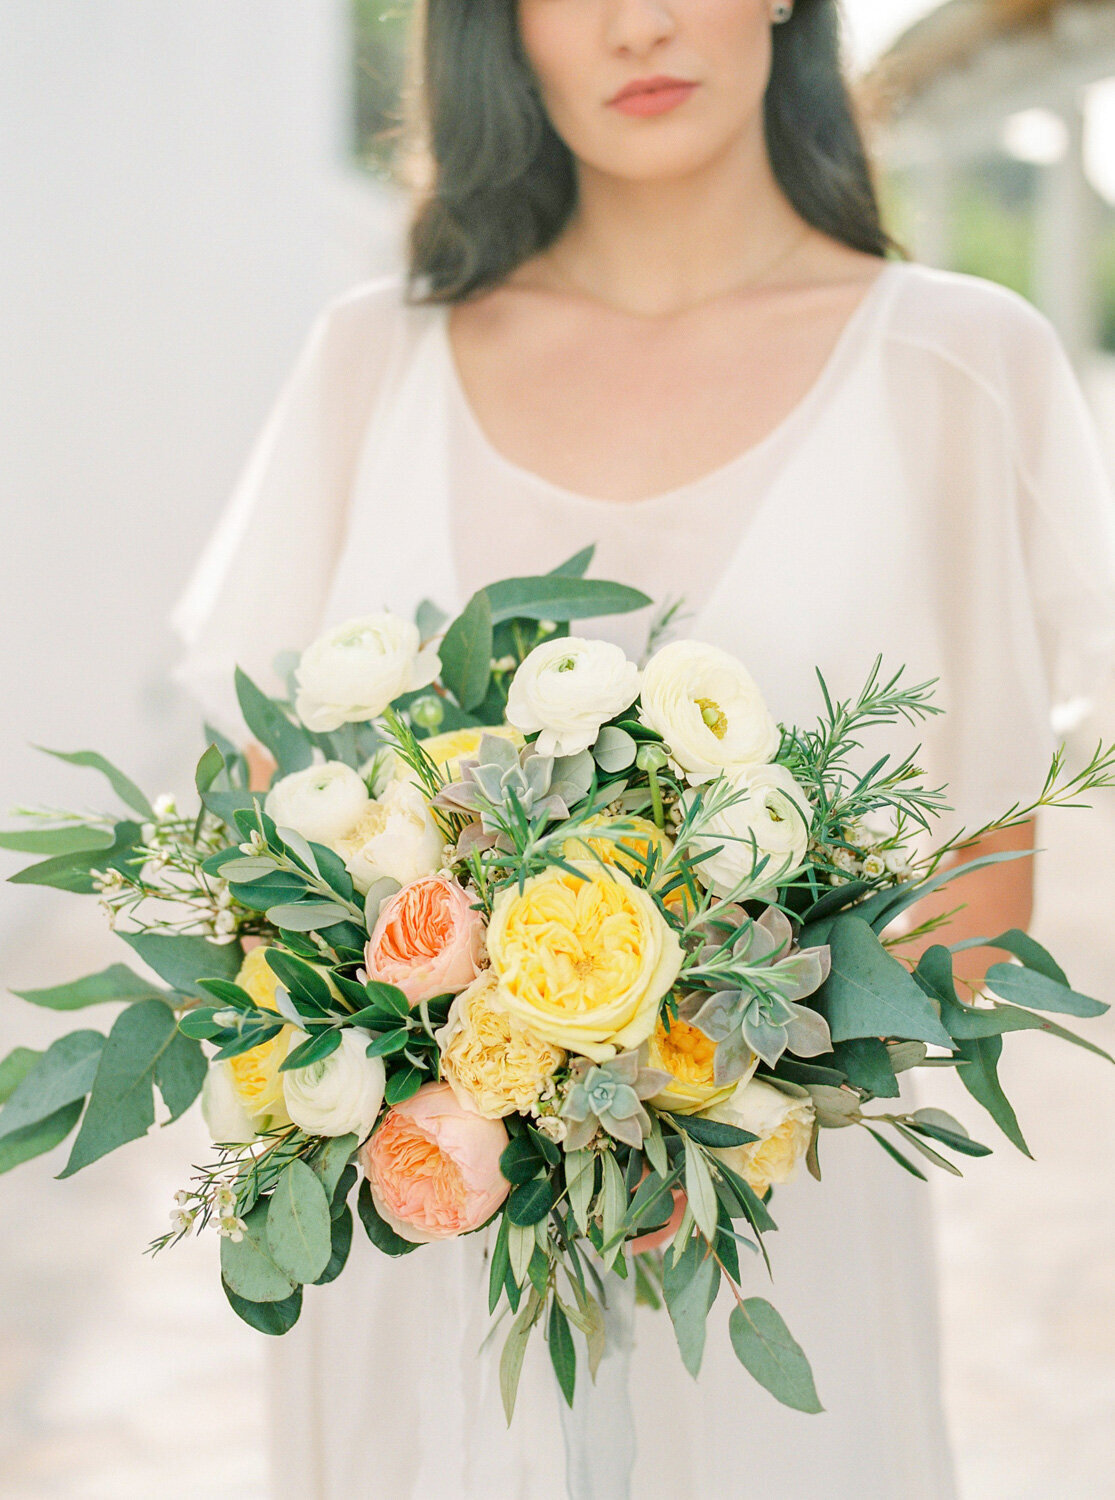 Wedding Bouquet by Intrecci di Fiore e d'Arte